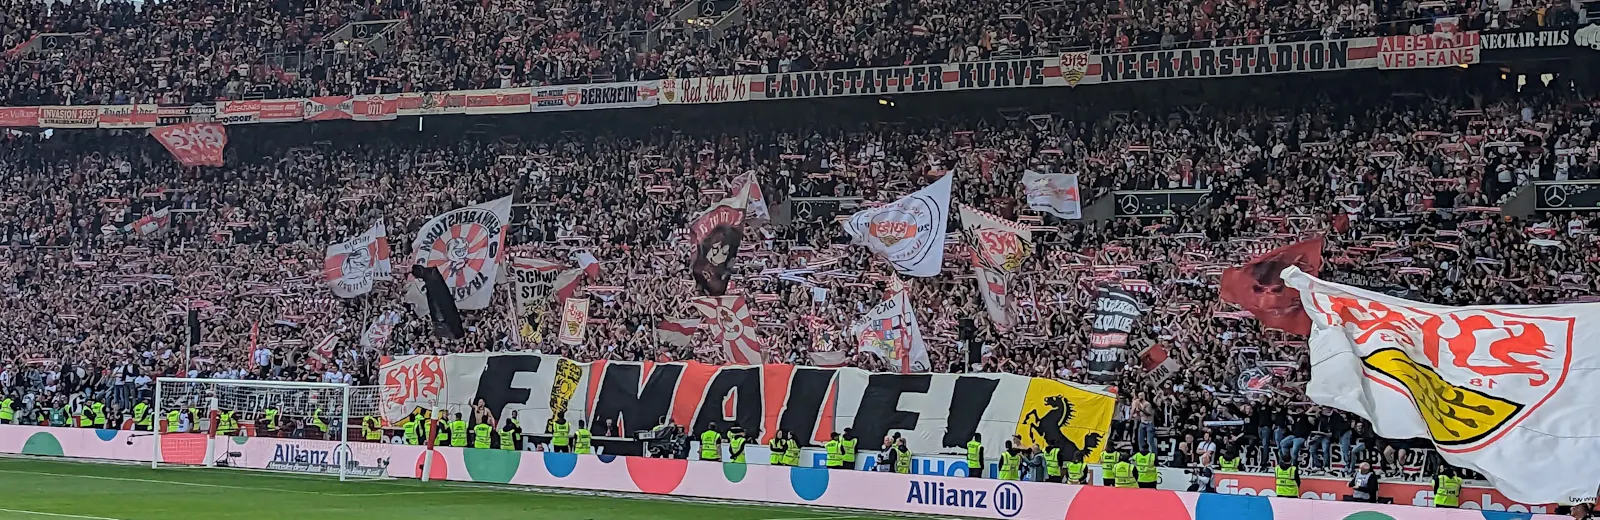 Die VfB-Fans in der Cannstatter Kurve hoffen auf das Finale im DFB-Pokal. Aber vorher muss erst Eintracht Frankfurt besiegt werden. Foto: Jürgen Brand